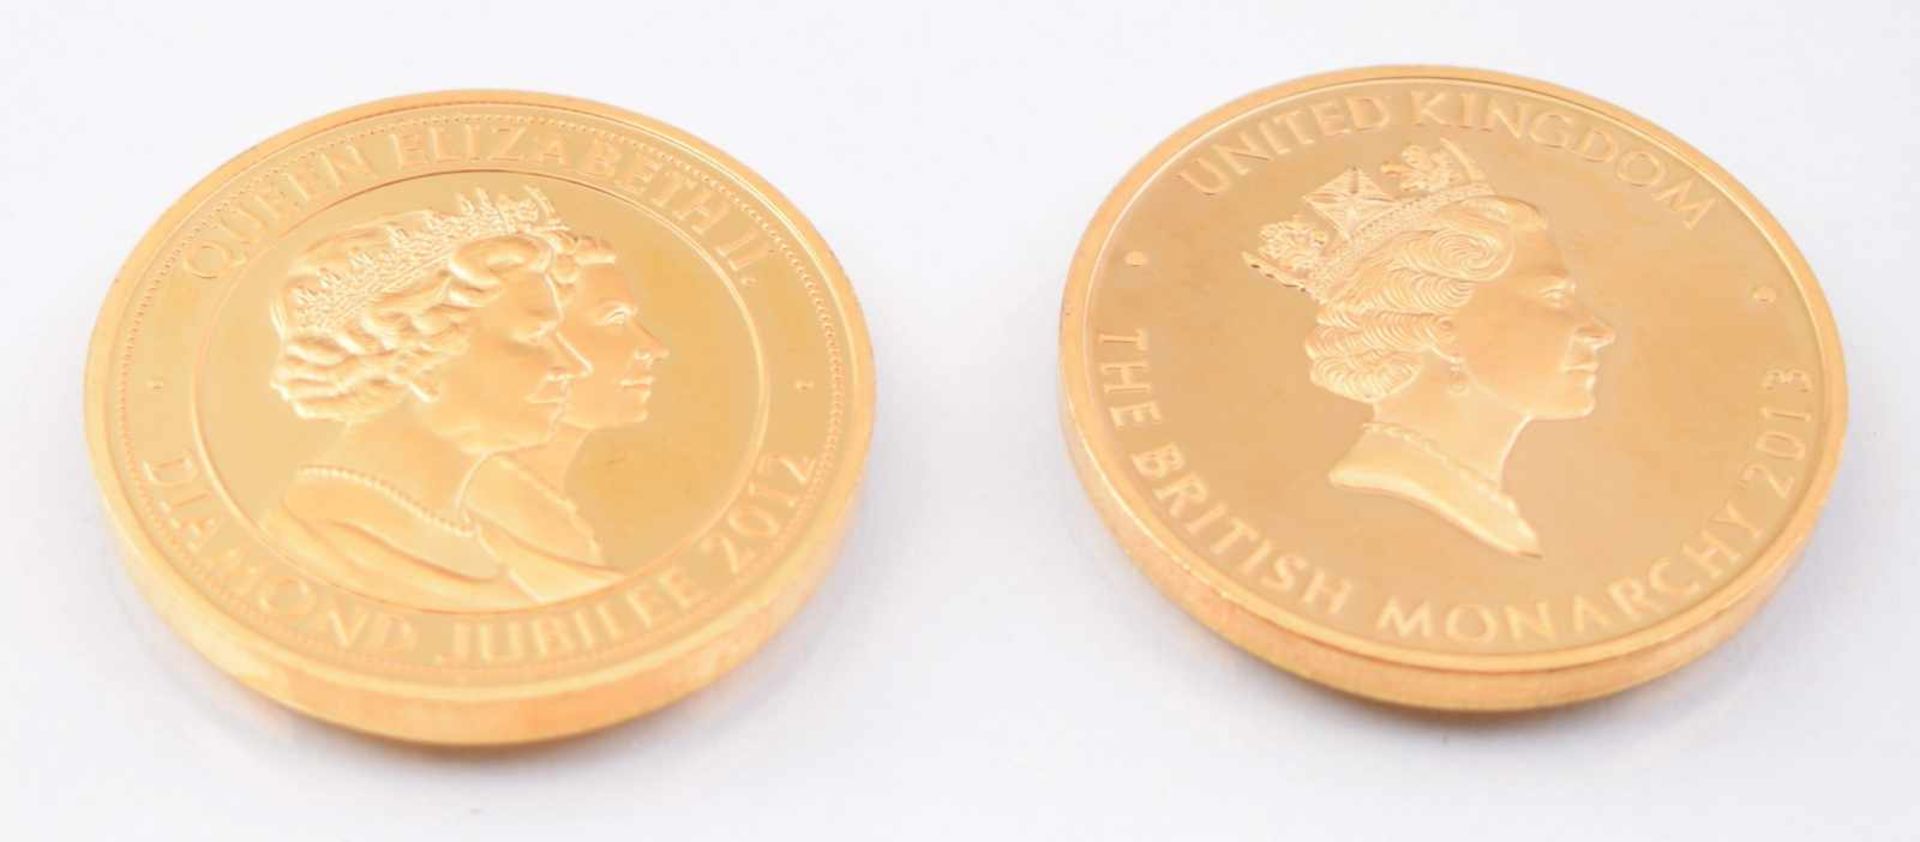 Zwei Medaillen vergoldet, anlässlich des Diamantenen Thronjubiläums von 2012 und 2013 der Queen